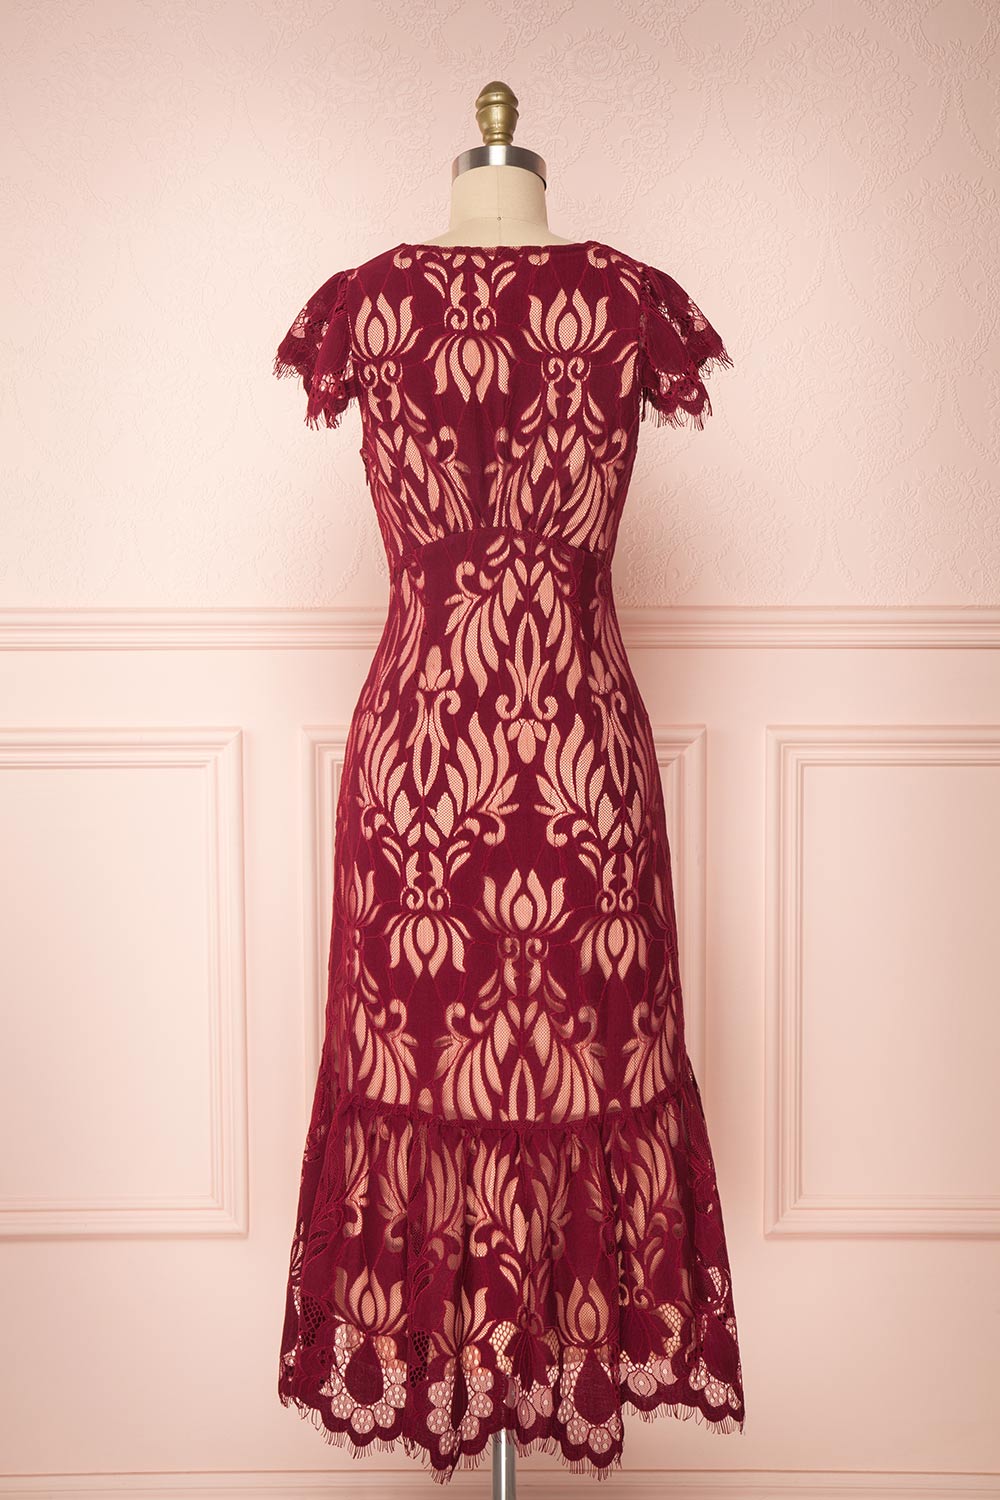 Kehaulani Burgundy Lace Button-Up Cocktail Dress | Boutique 1861 4